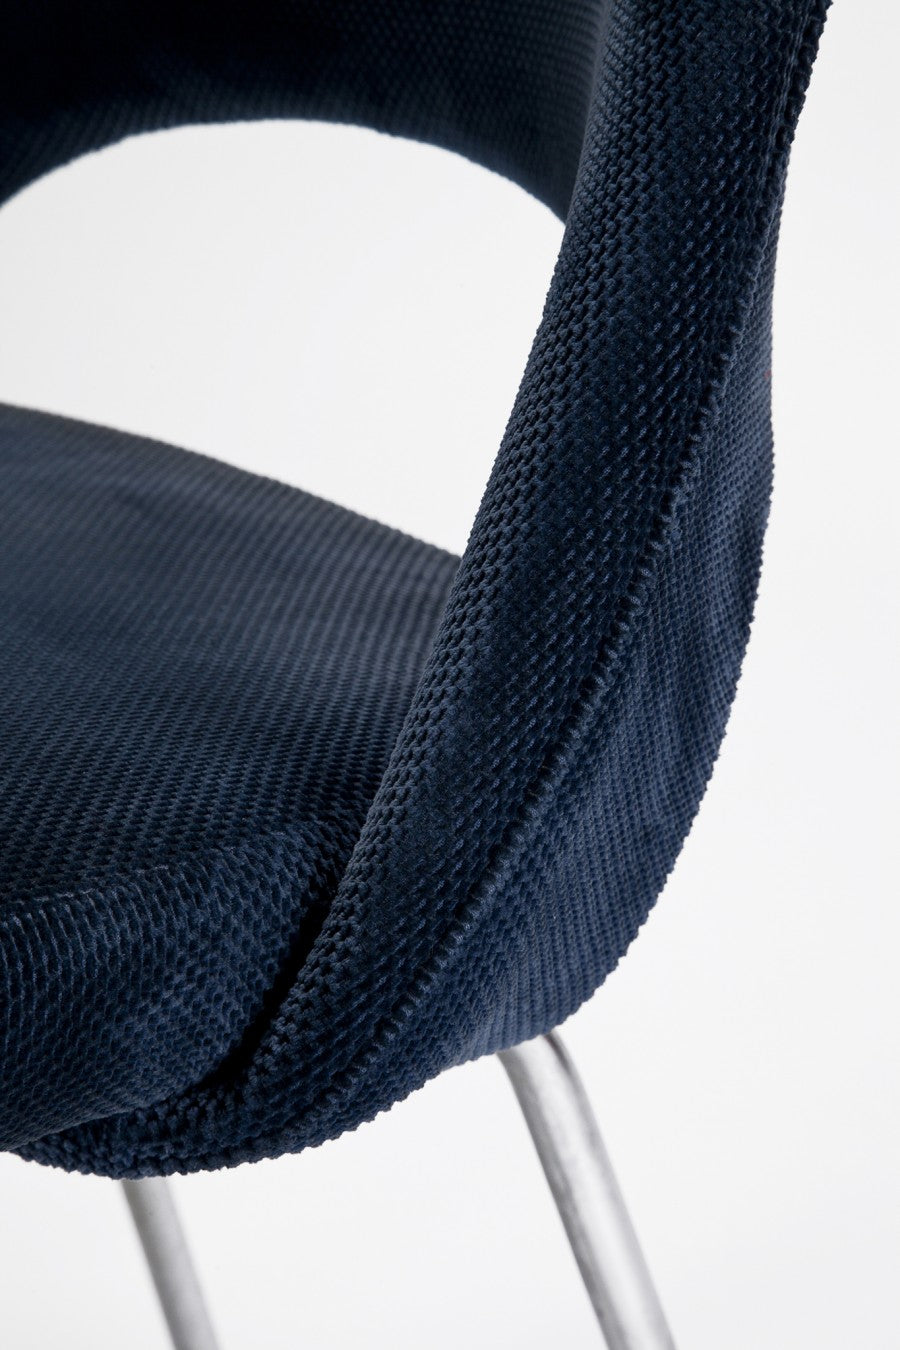 6 Flexible Chairs von Eero Saarinnen